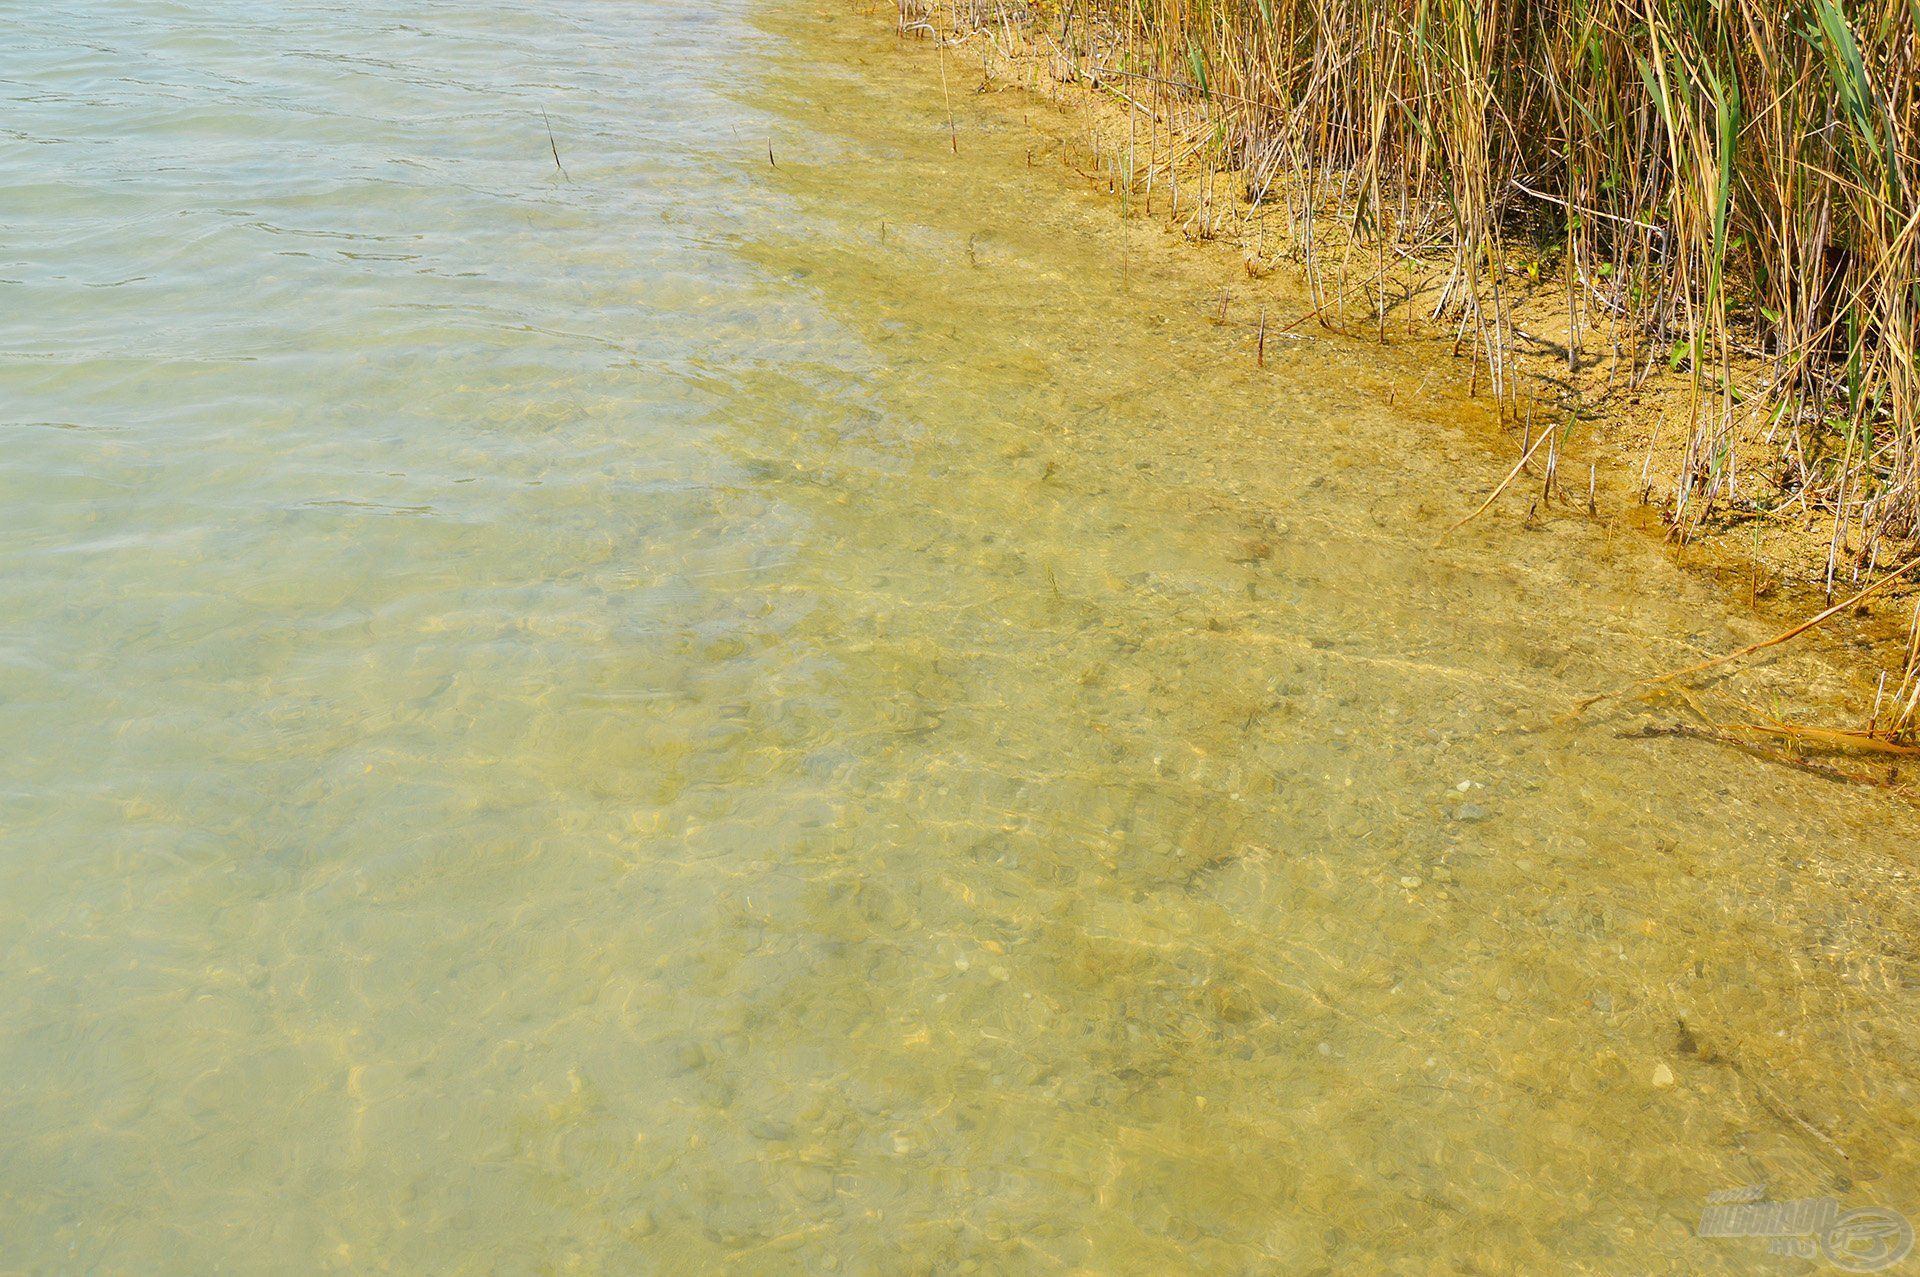 Ezt a tavat gyönyörű környezet és kristálytiszta víz jellemzi. Napsütéses időben a víz szélén sétálva olyan, akár egy tengerpart…